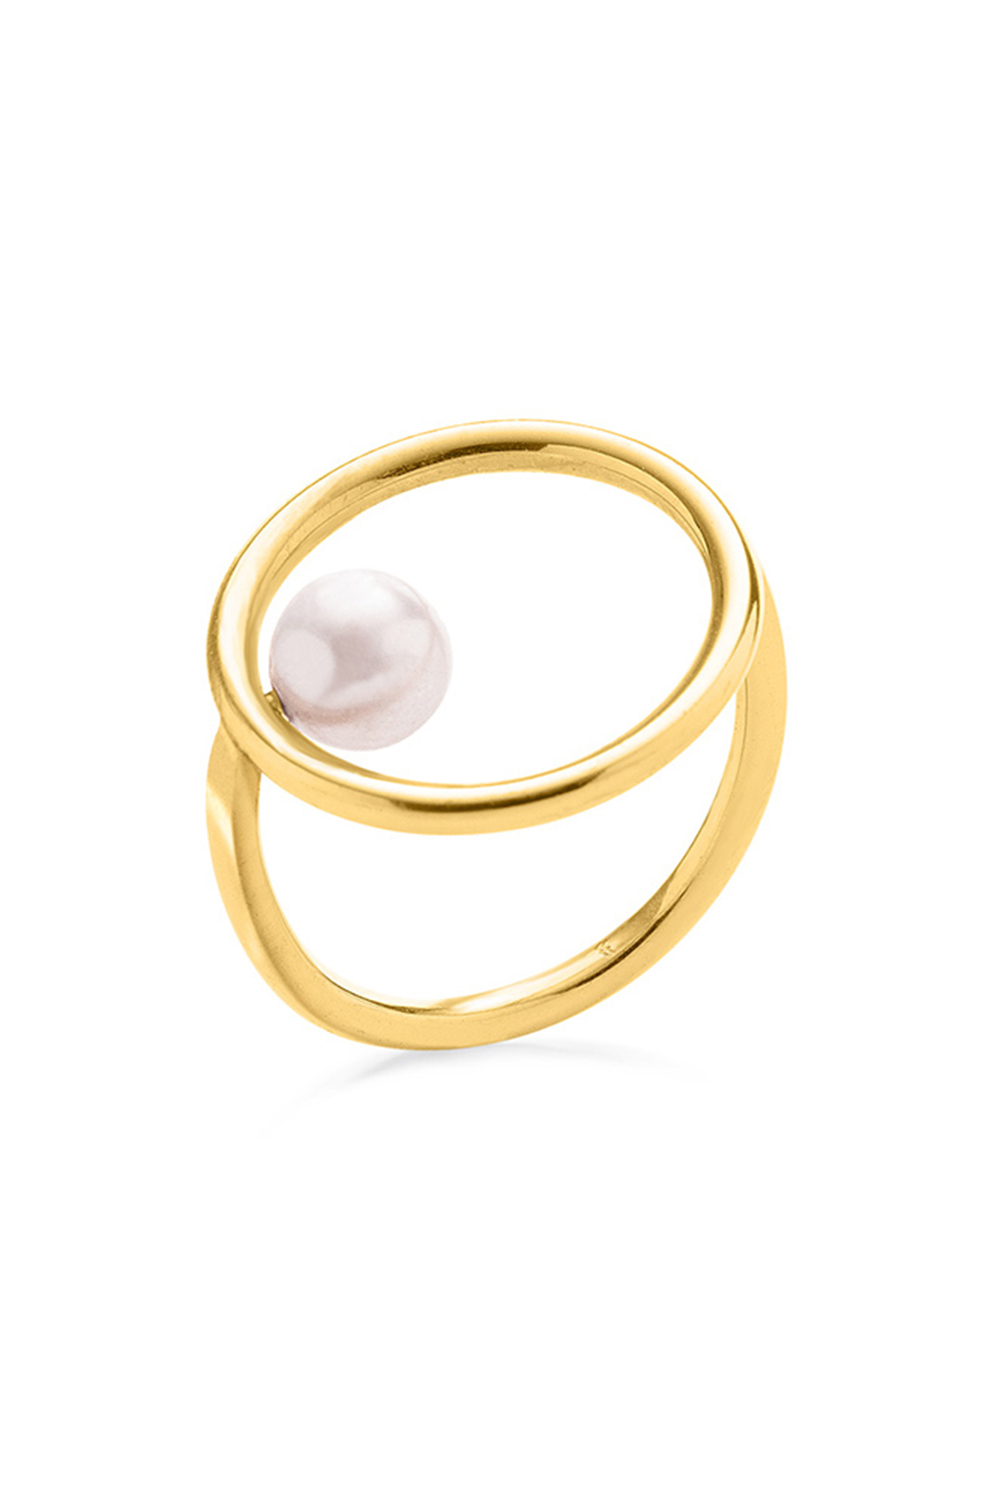 FOLLI FOLLIE – Γυναικειο ασημενιο δαχτυλιδι FOLLI FOLLIE LINK UP χρυσο